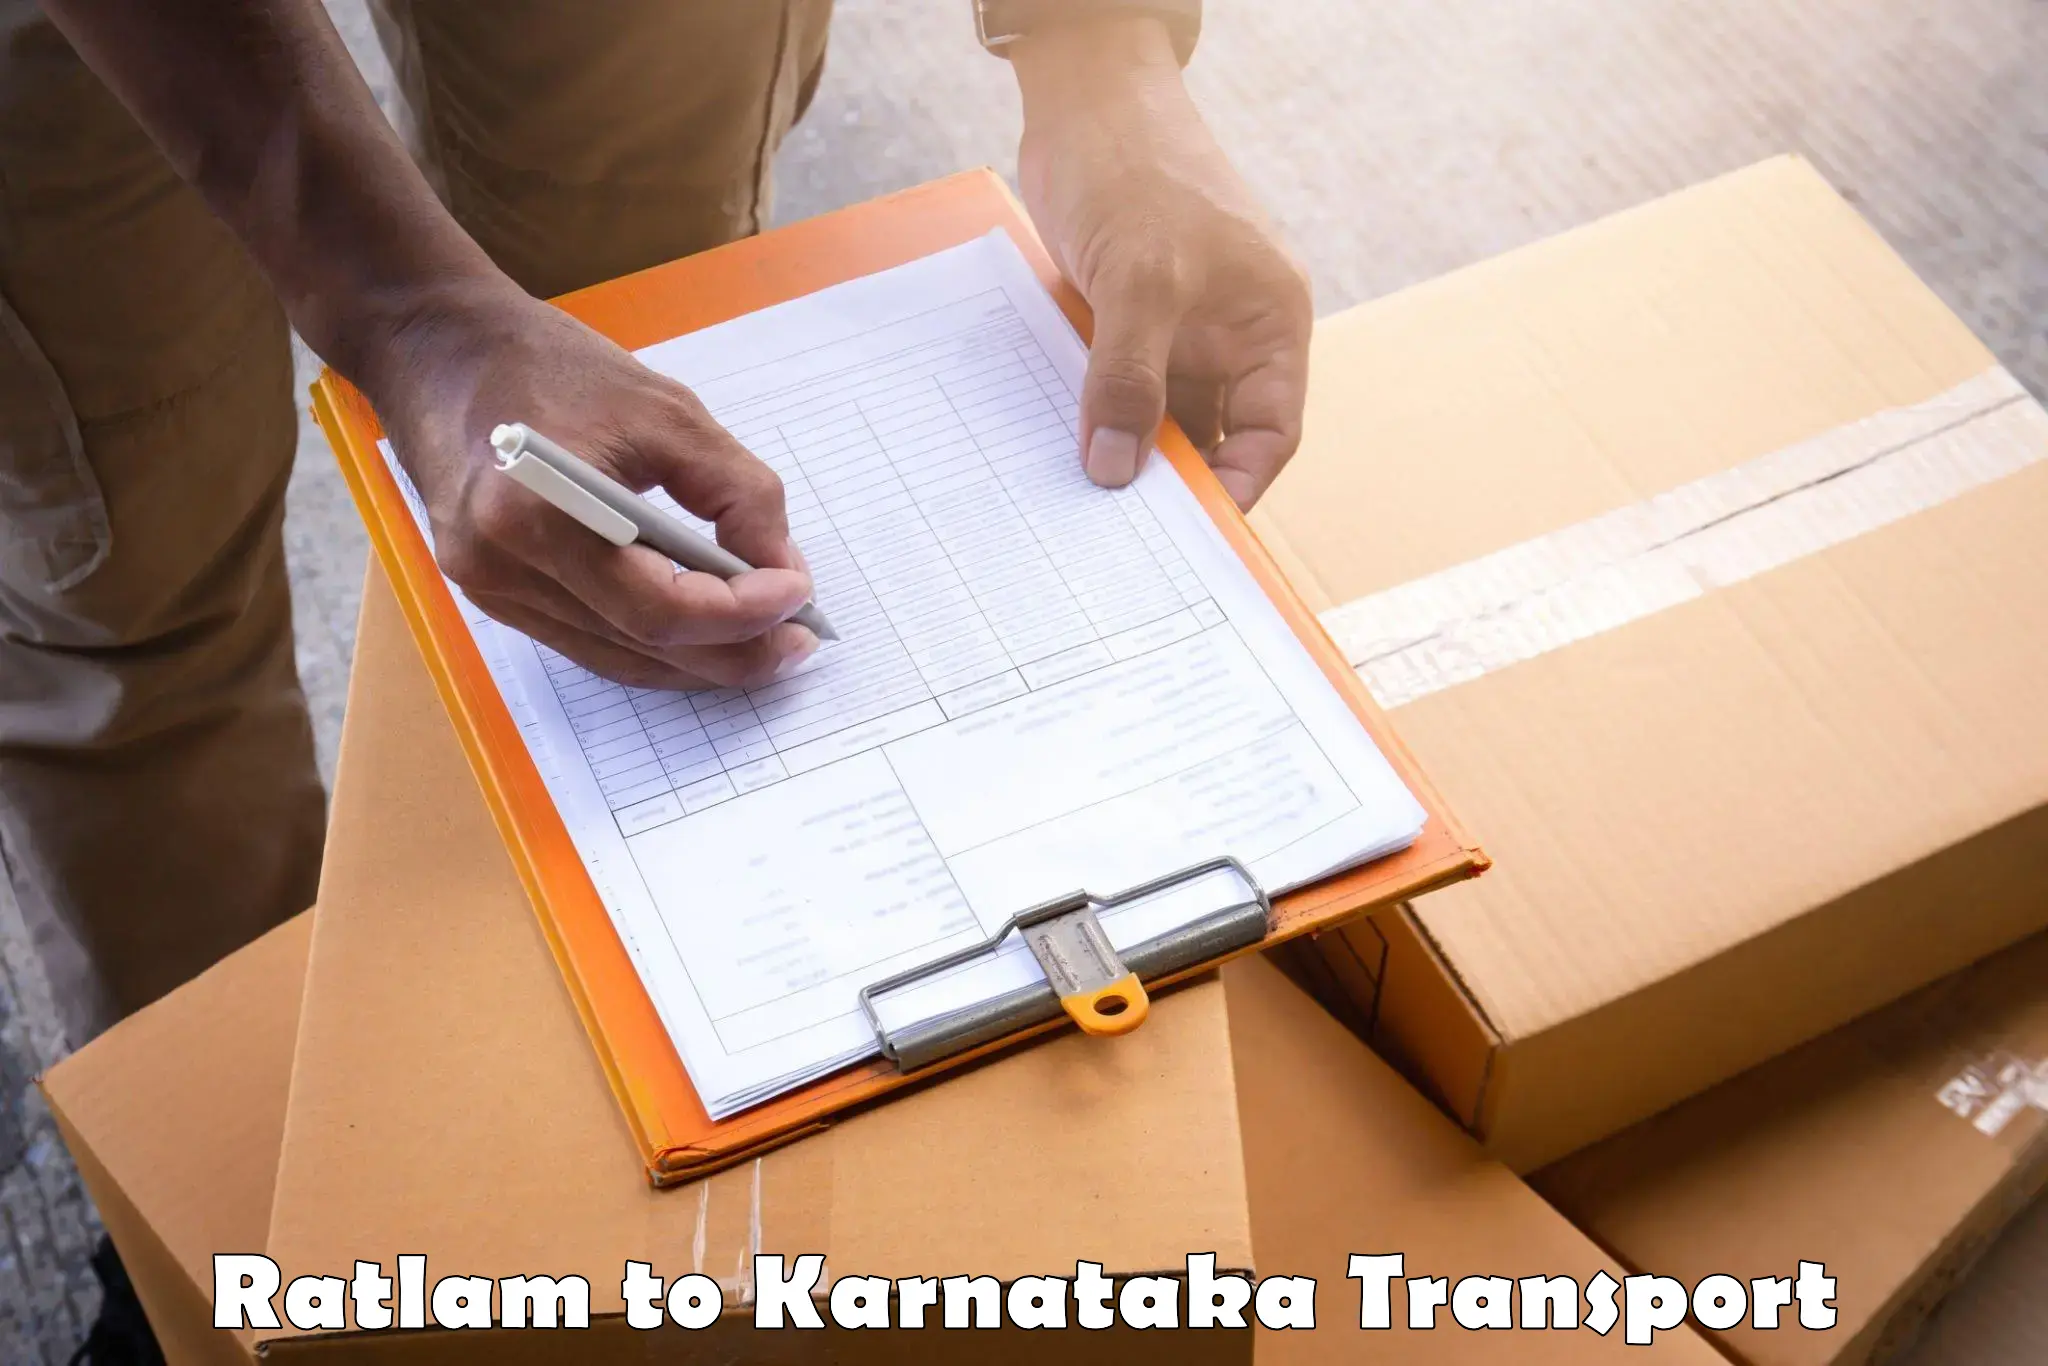 Shipping partner Ratlam to Bangalore